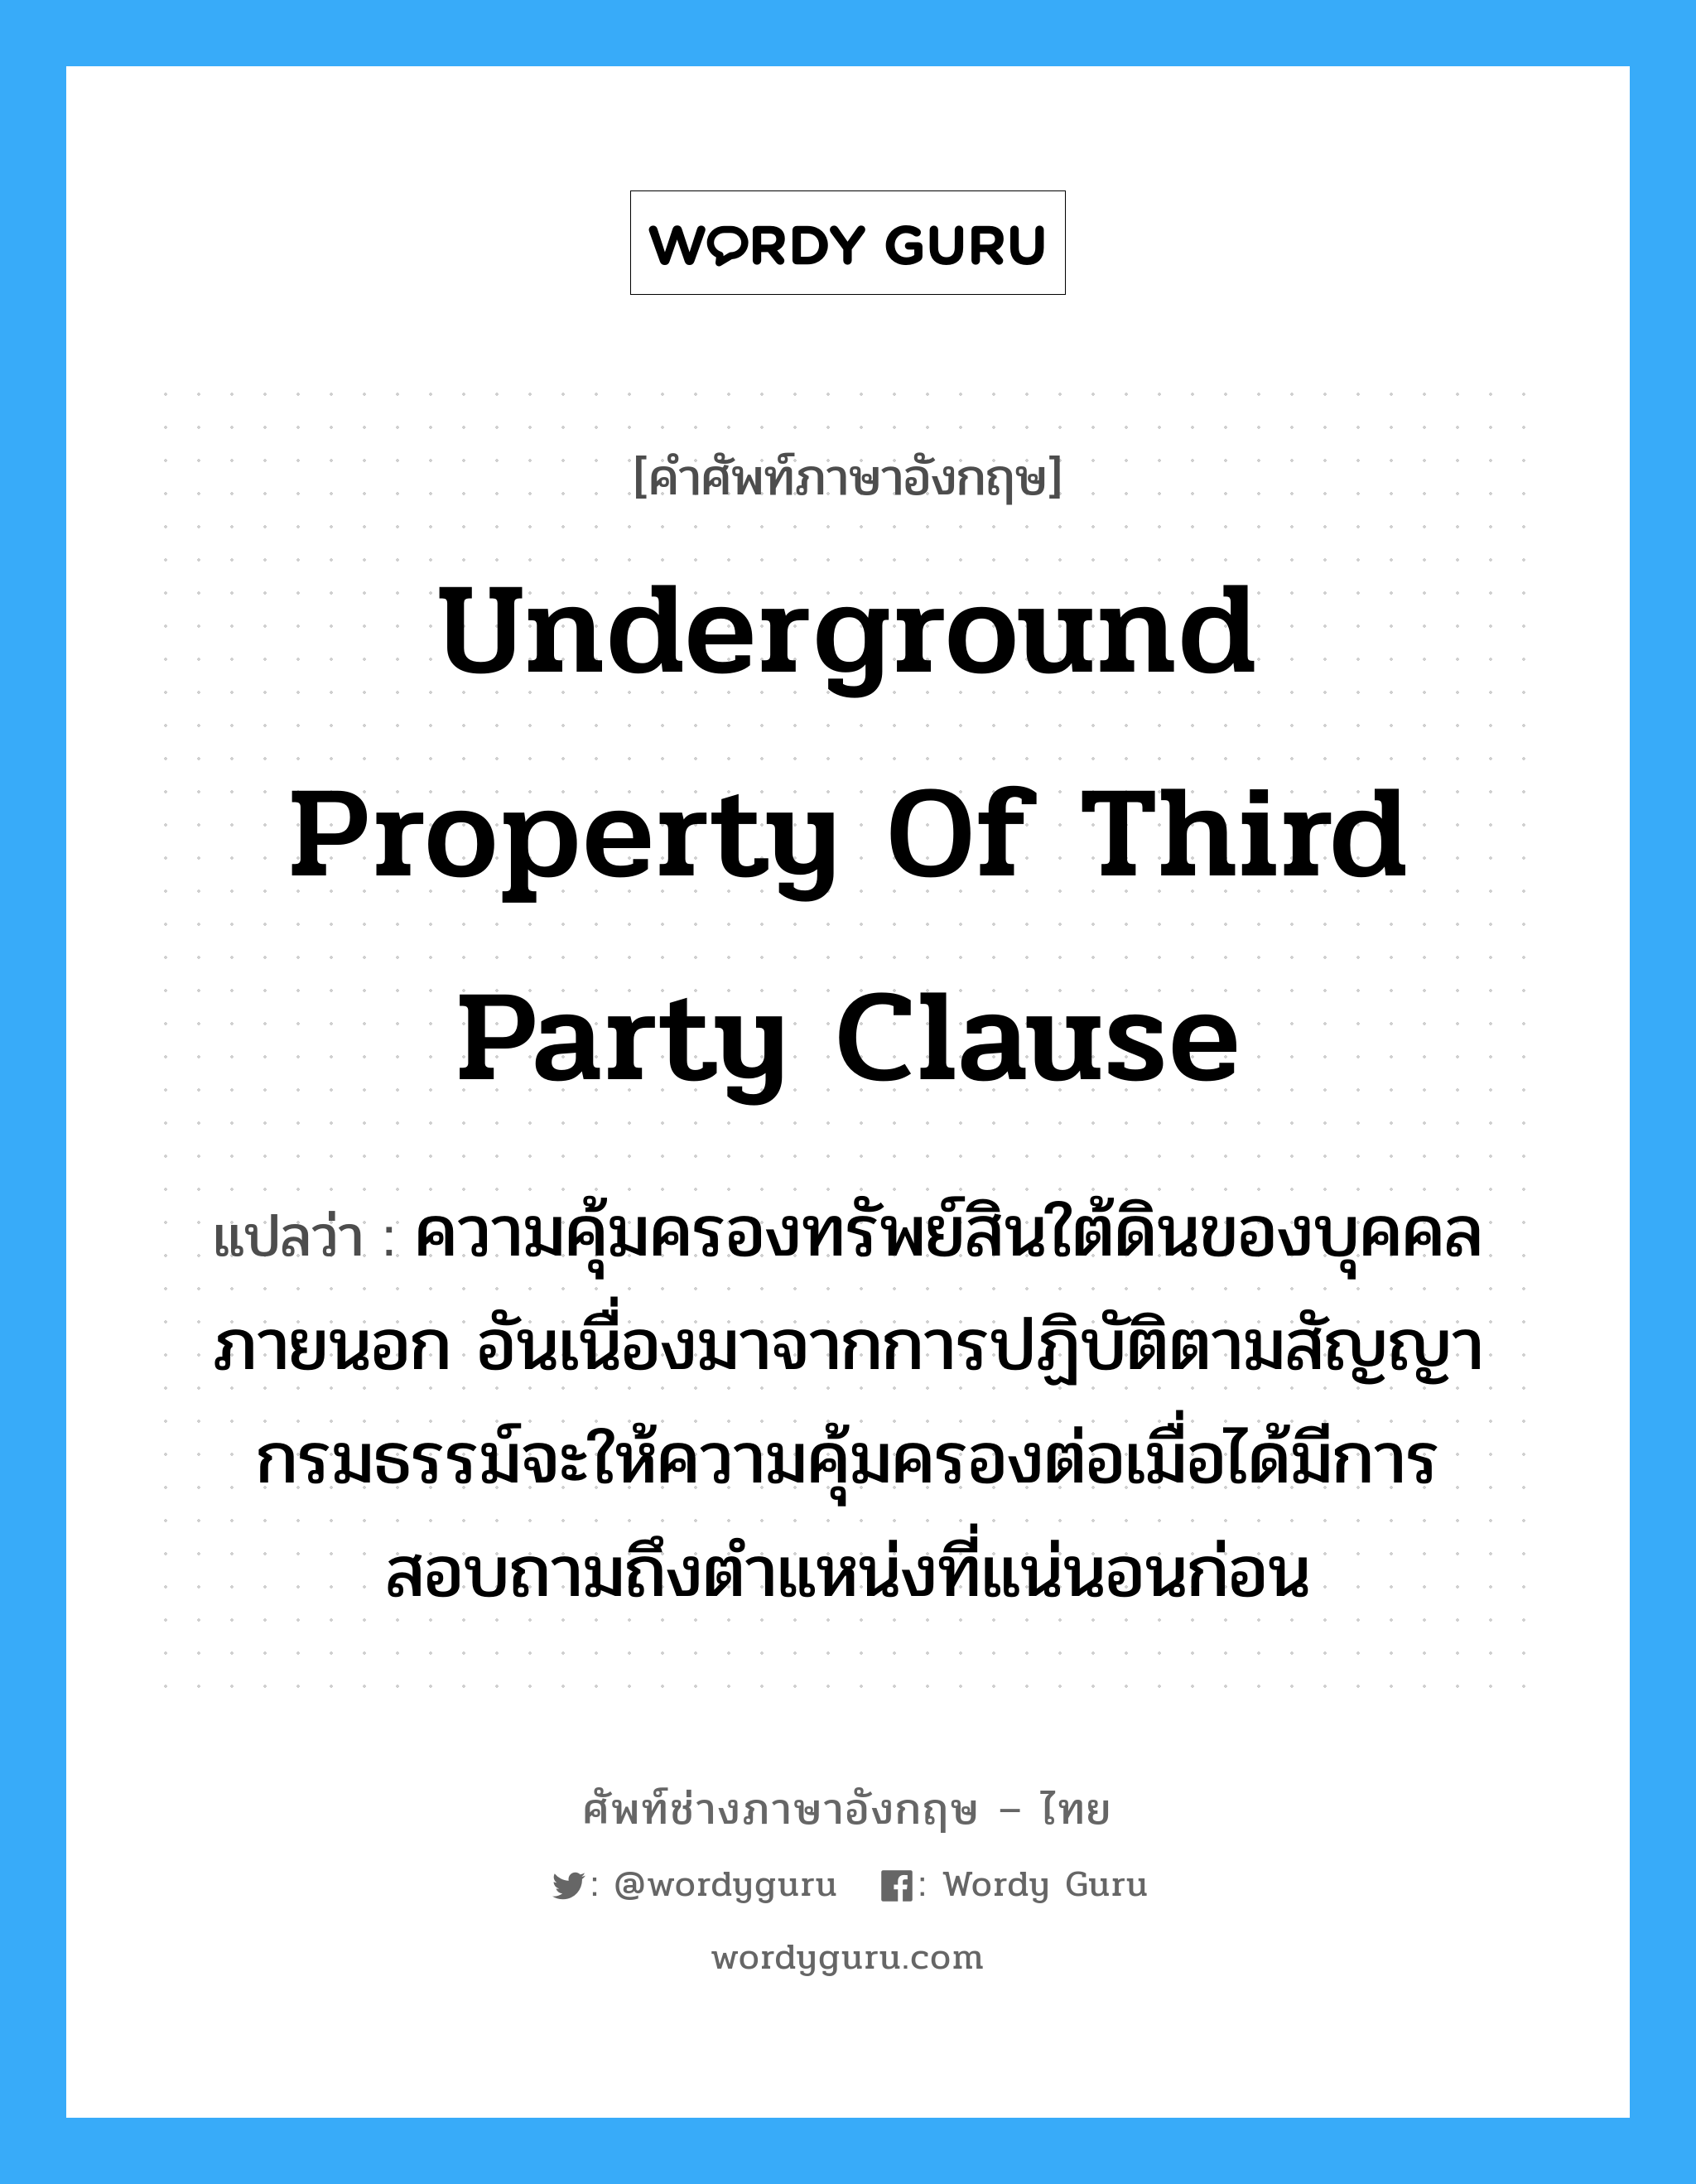 Underground Property of Third Party Clause แปลว่า?, คำศัพท์ช่างภาษาอังกฤษ - ไทย Underground Property of Third Party Clause คำศัพท์ภาษาอังกฤษ Underground Property of Third Party Clause แปลว่า ความคุ้มครองทรัพย์สินใต้ดินของบุคคลภายนอก อันเนื่องมาจากการปฏิบัติตามสัญญา กรมธรรม์จะให้ความคุ้มครองต่อเมื่อได้มีการสอบถามถึงตำแหน่งที่แน่นอนก่อน